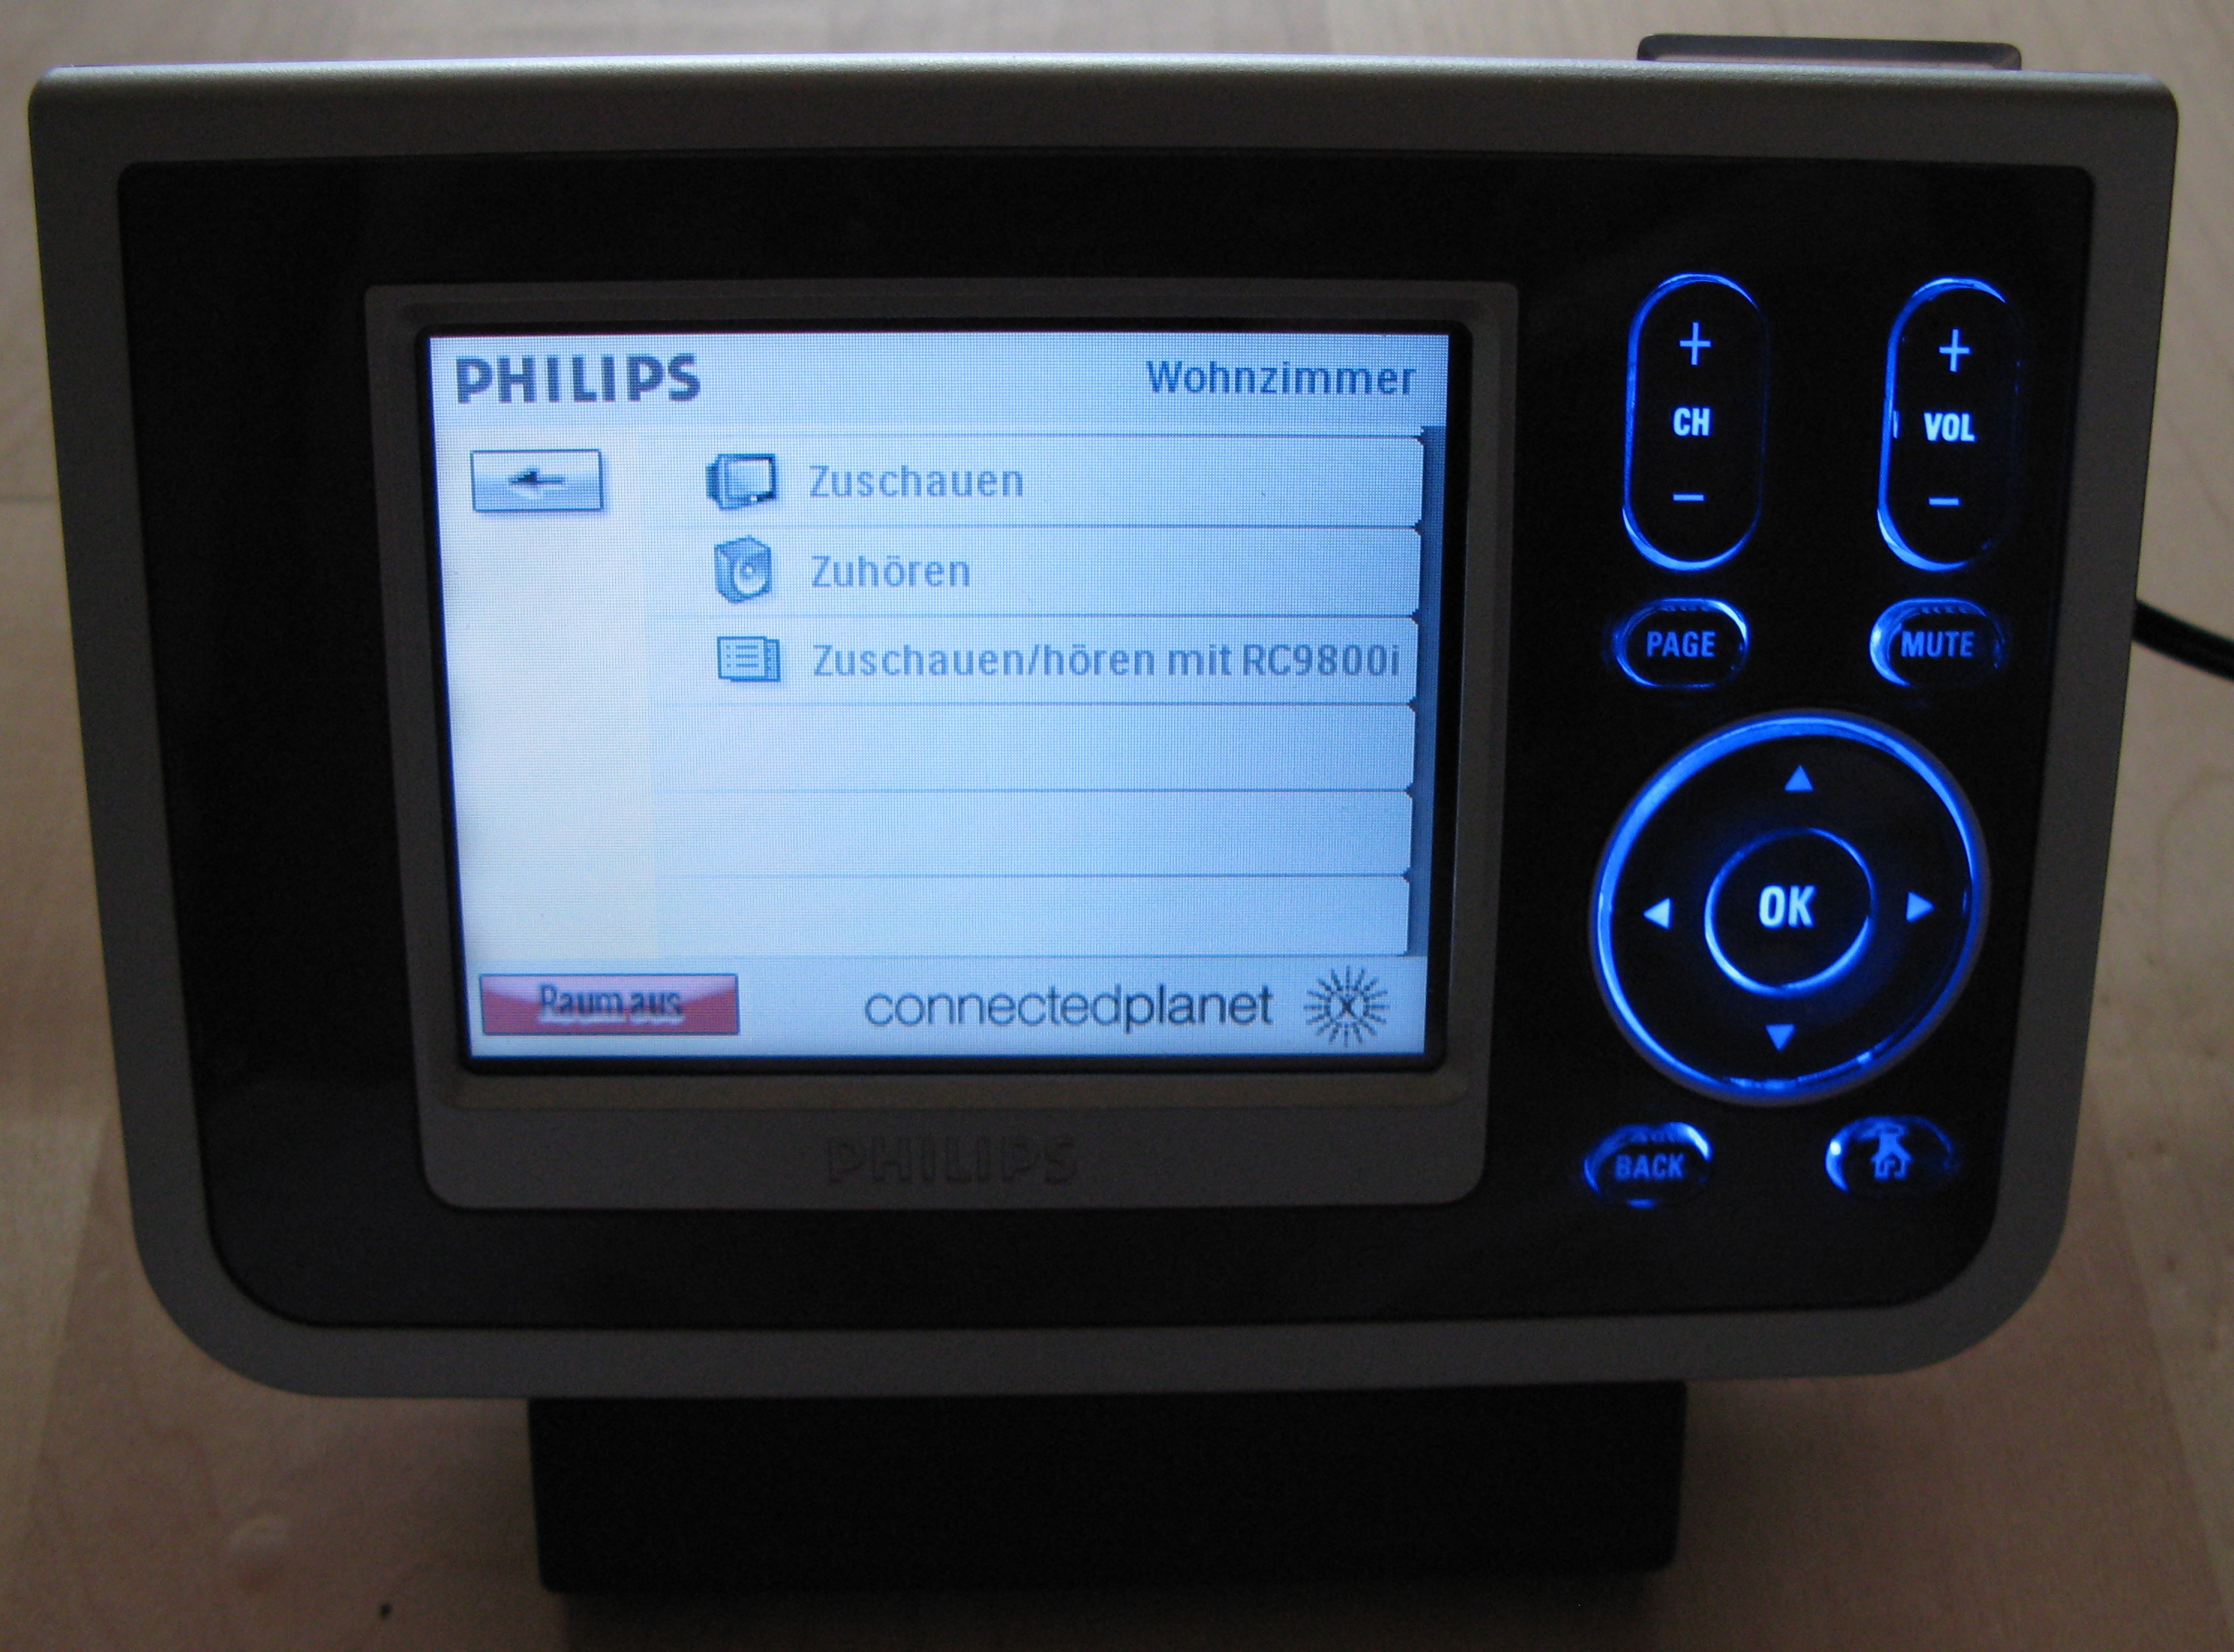 Philips Pronto - RC9800i - Fernbedienung.jpg